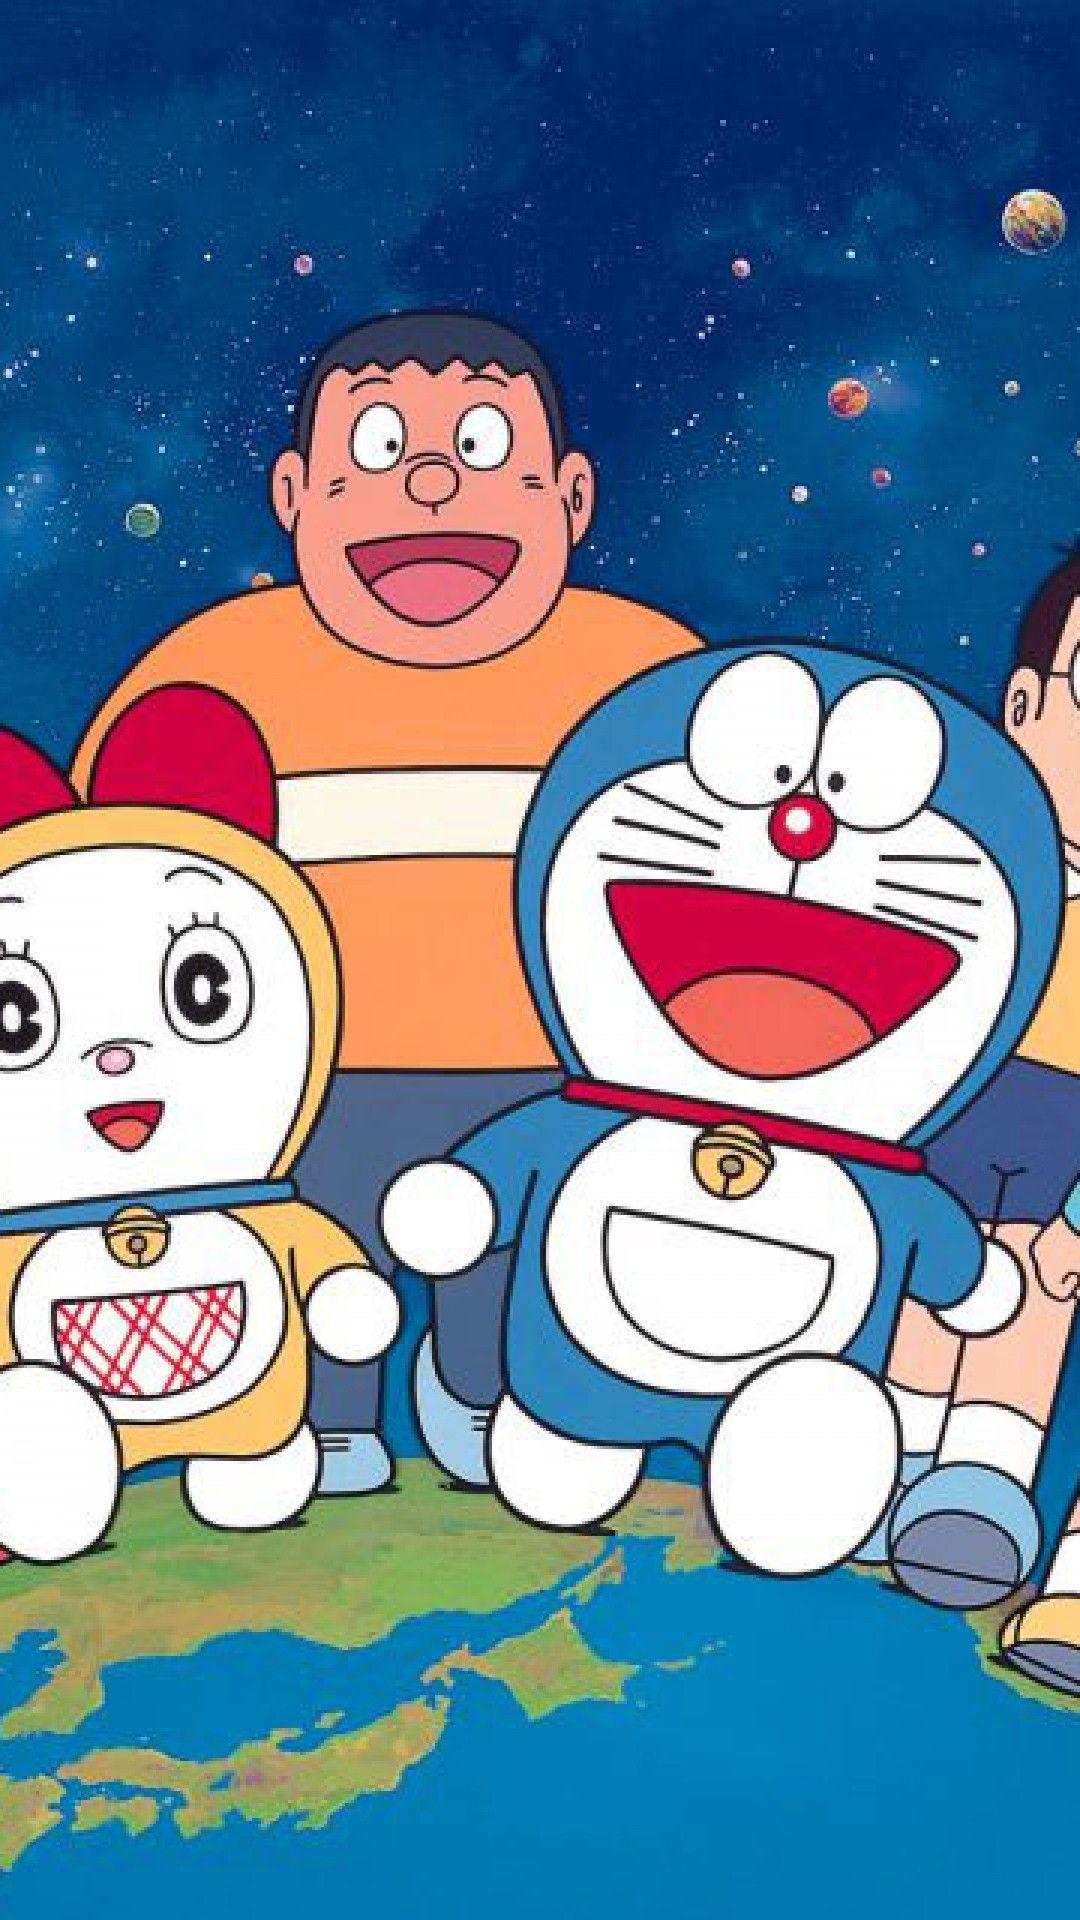  Doraemon  3D  Wallpapers  Top Free Doraemon  3D  Backgrounds  